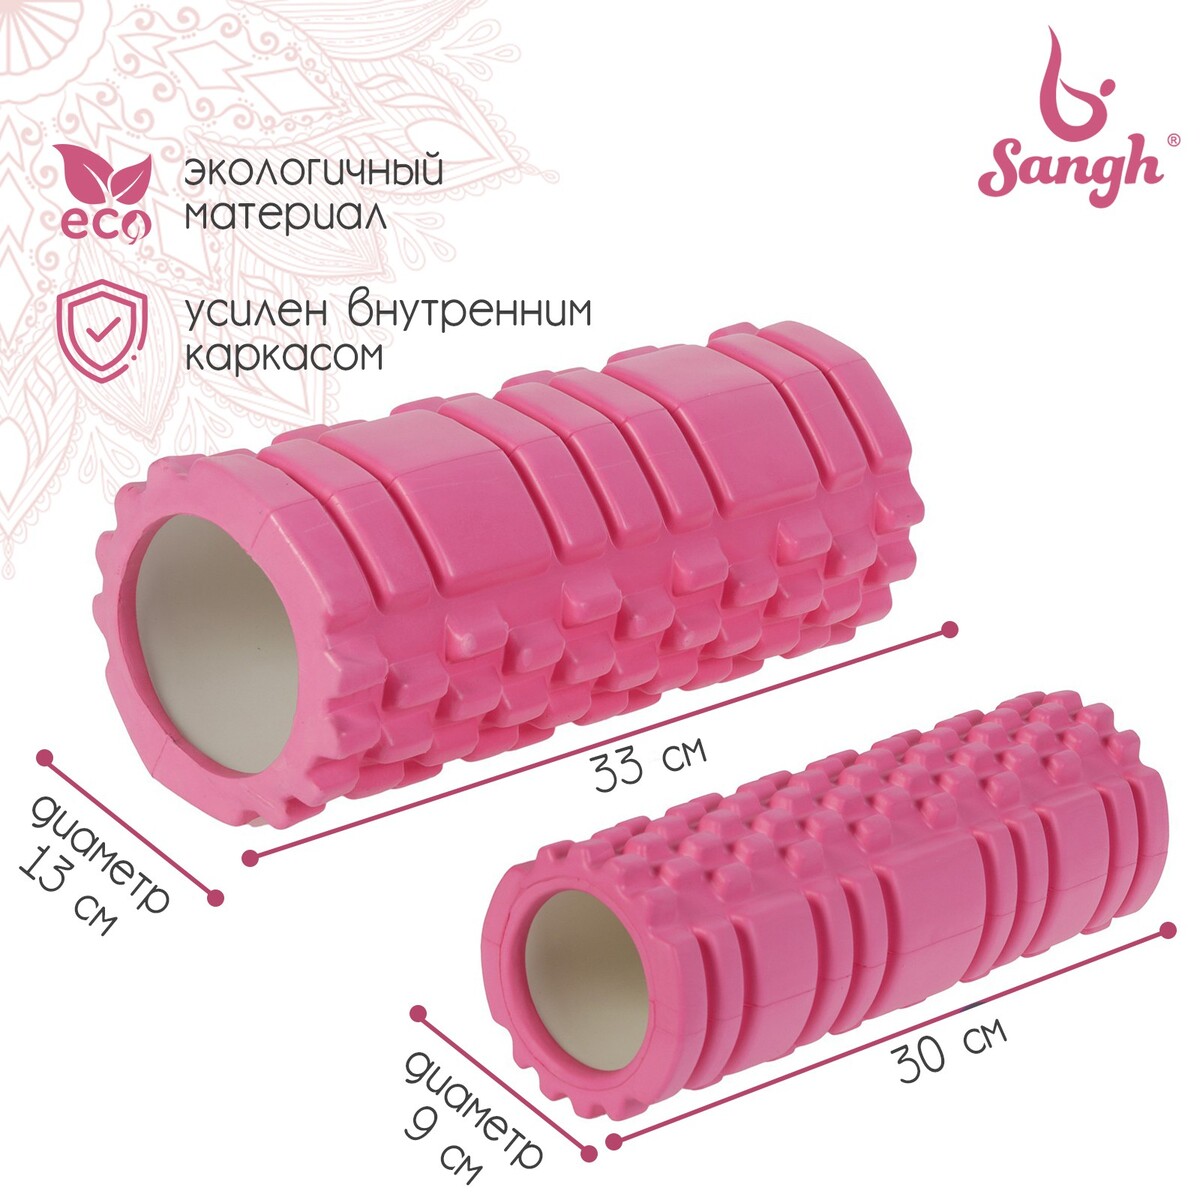 Набор массажных роликов 2 в 1 sangh, 33х13 см и 30х9 см, цвет розовый набор для чистки одежды lrs 50 ролик 2 запасных блока